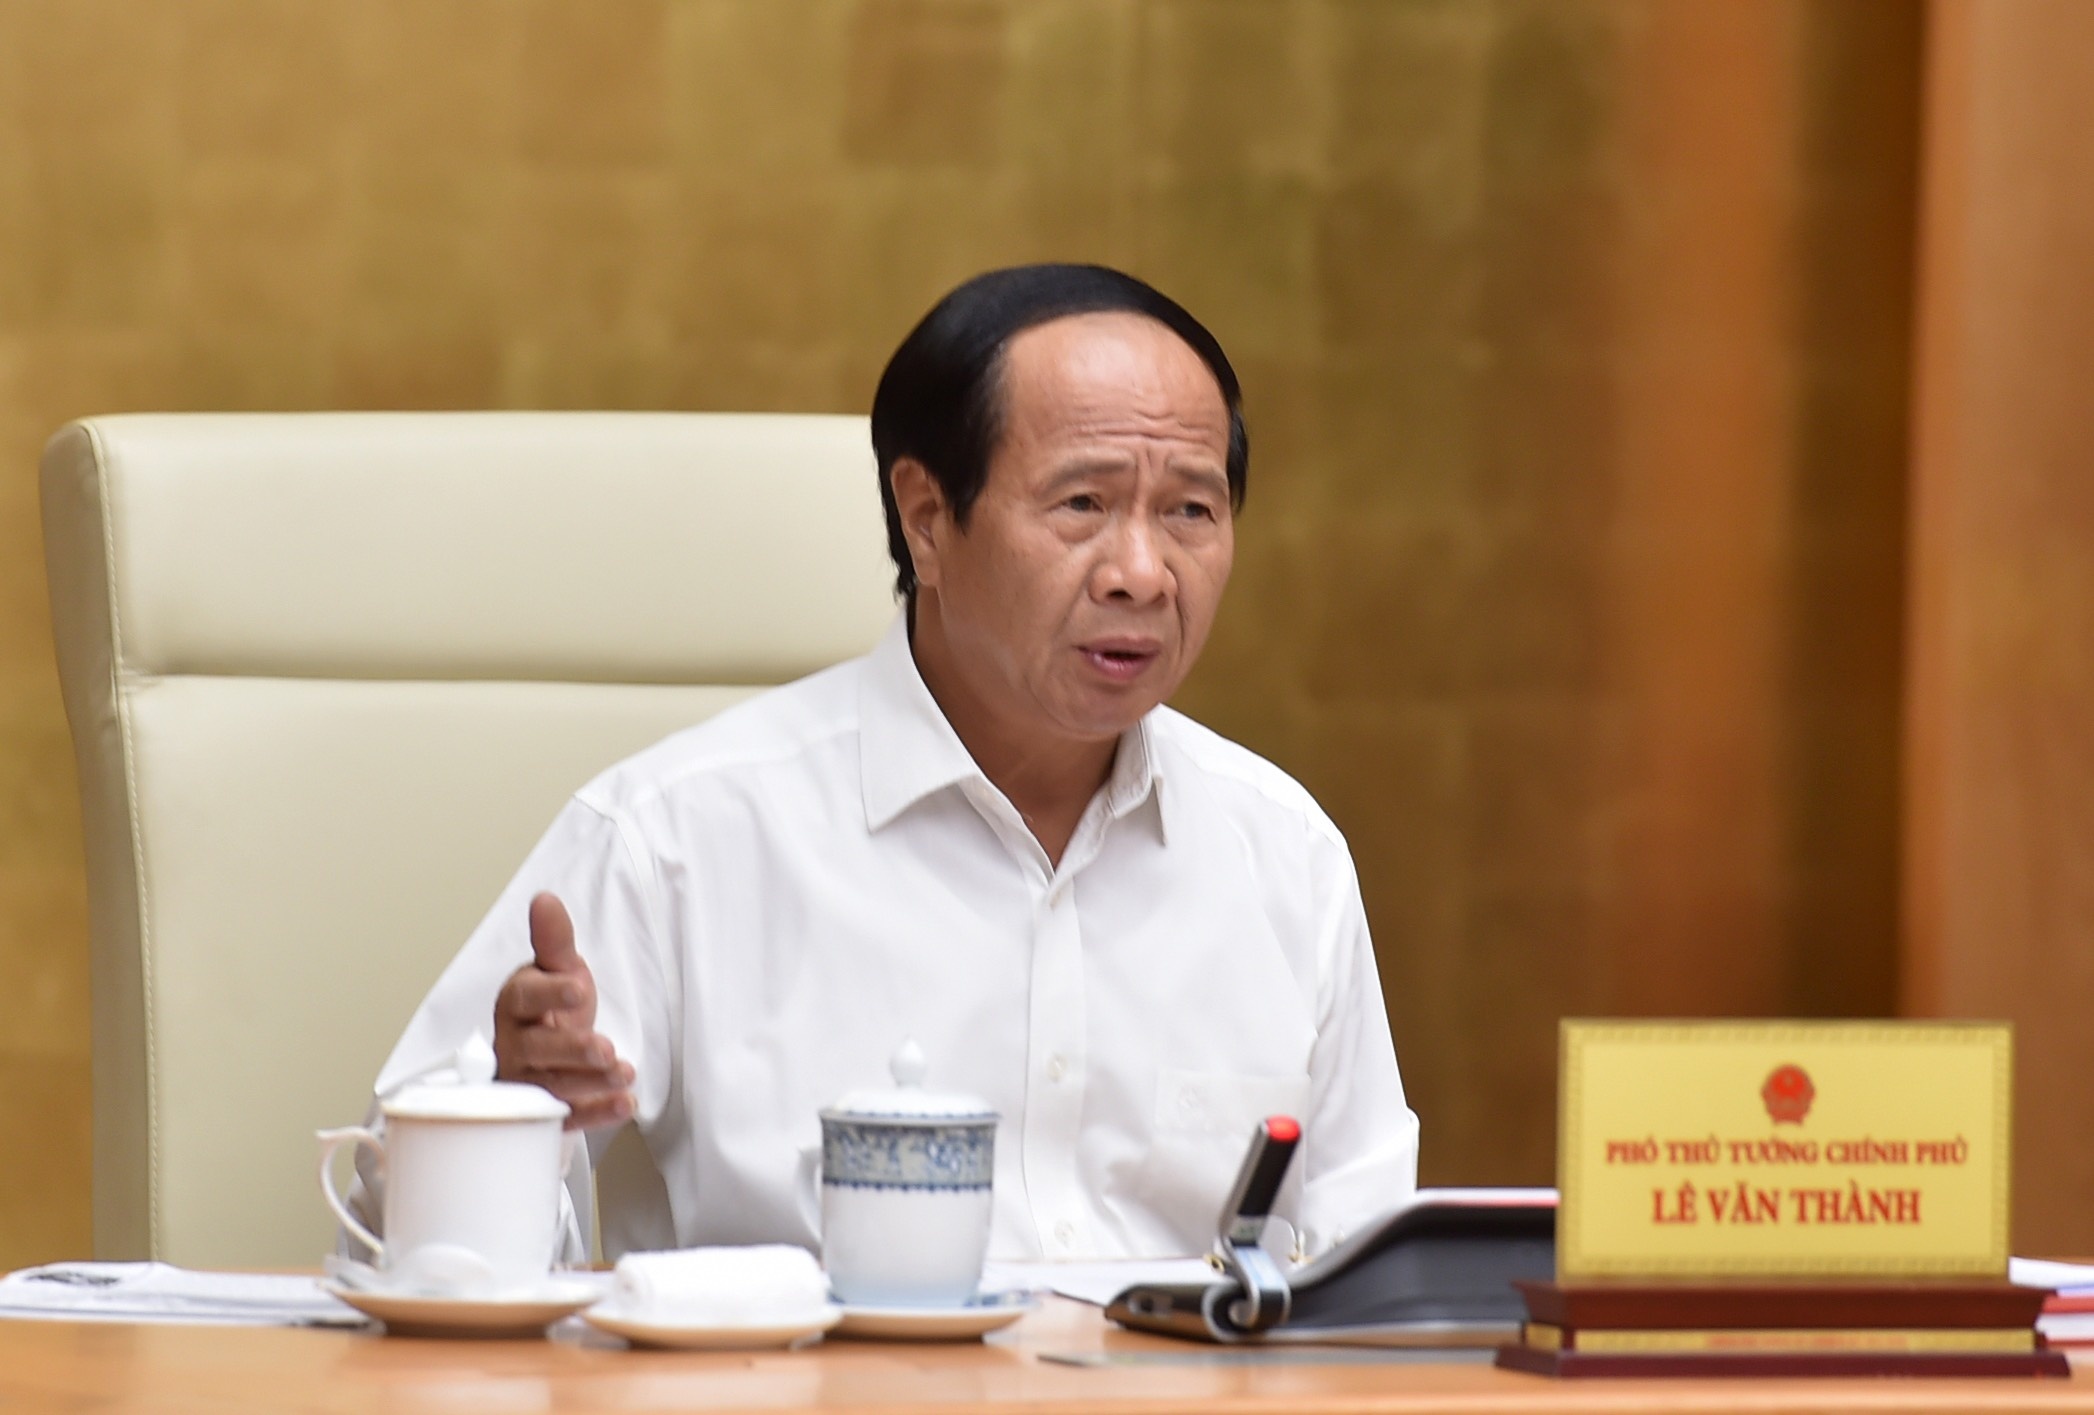 Phó thủ tướng Lê Văn Thành chủ trì cuộc họp ứng phó với bão số 1 sáng 2/7. Ảnh: Đức Tuân.